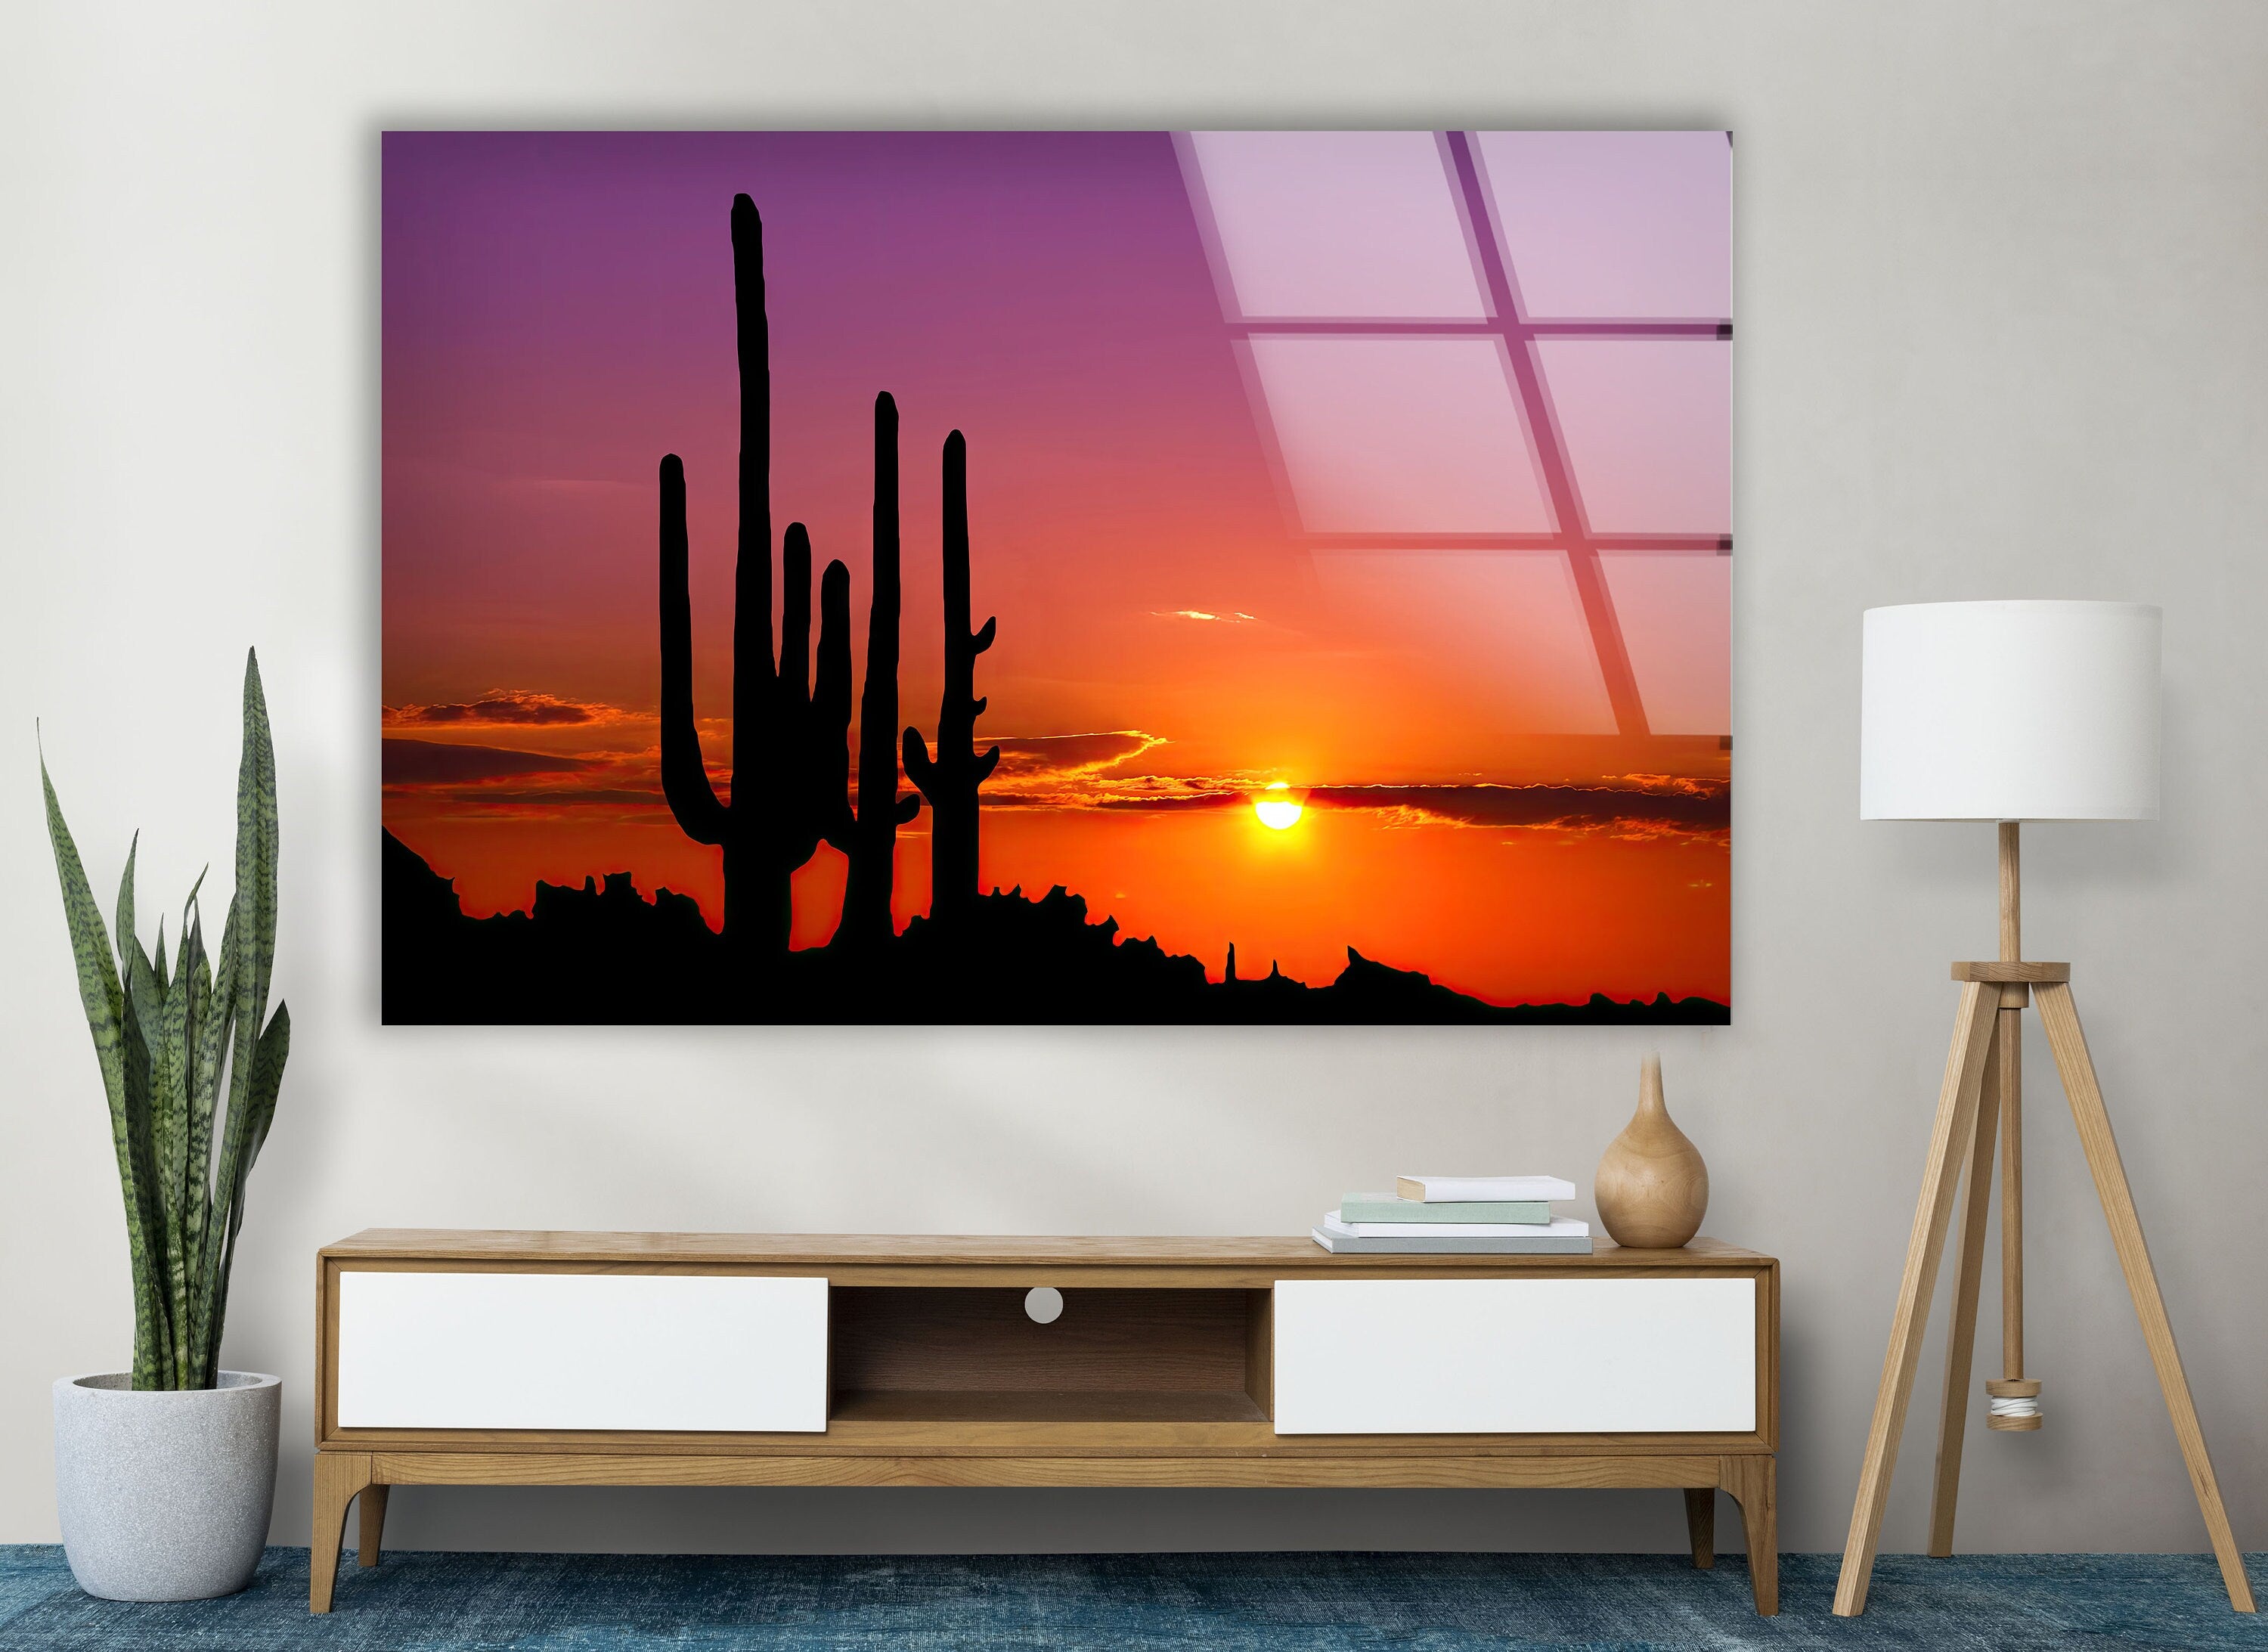 Sonoran Desert Phoenix Arizona Tempered Glass Wall Art